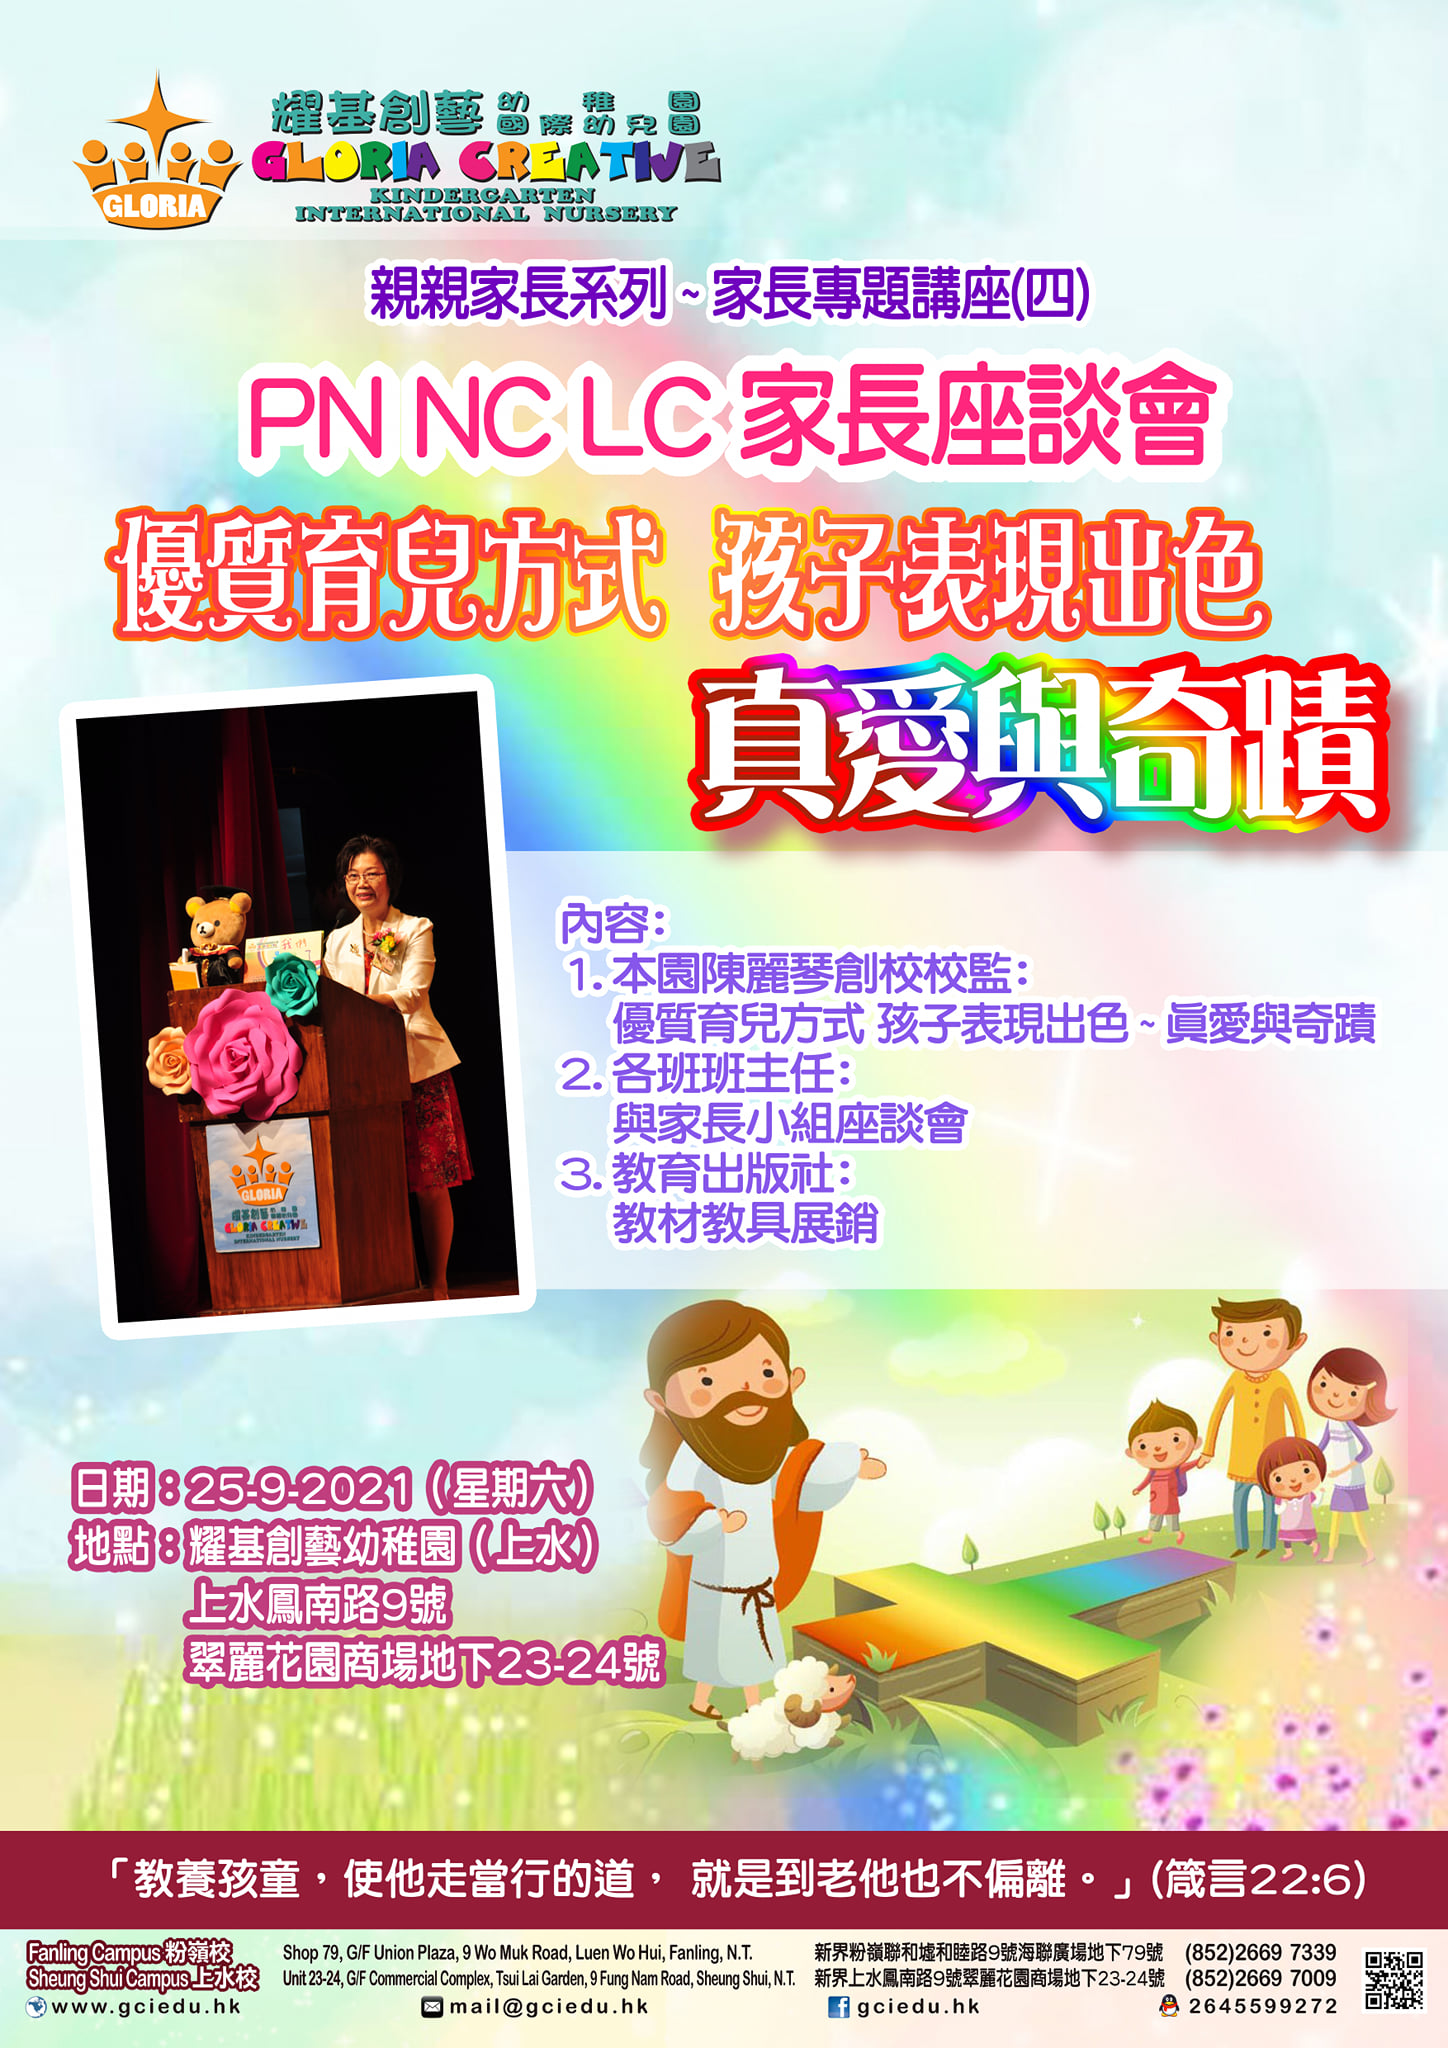 Photo of PN NC LC Parents workshop